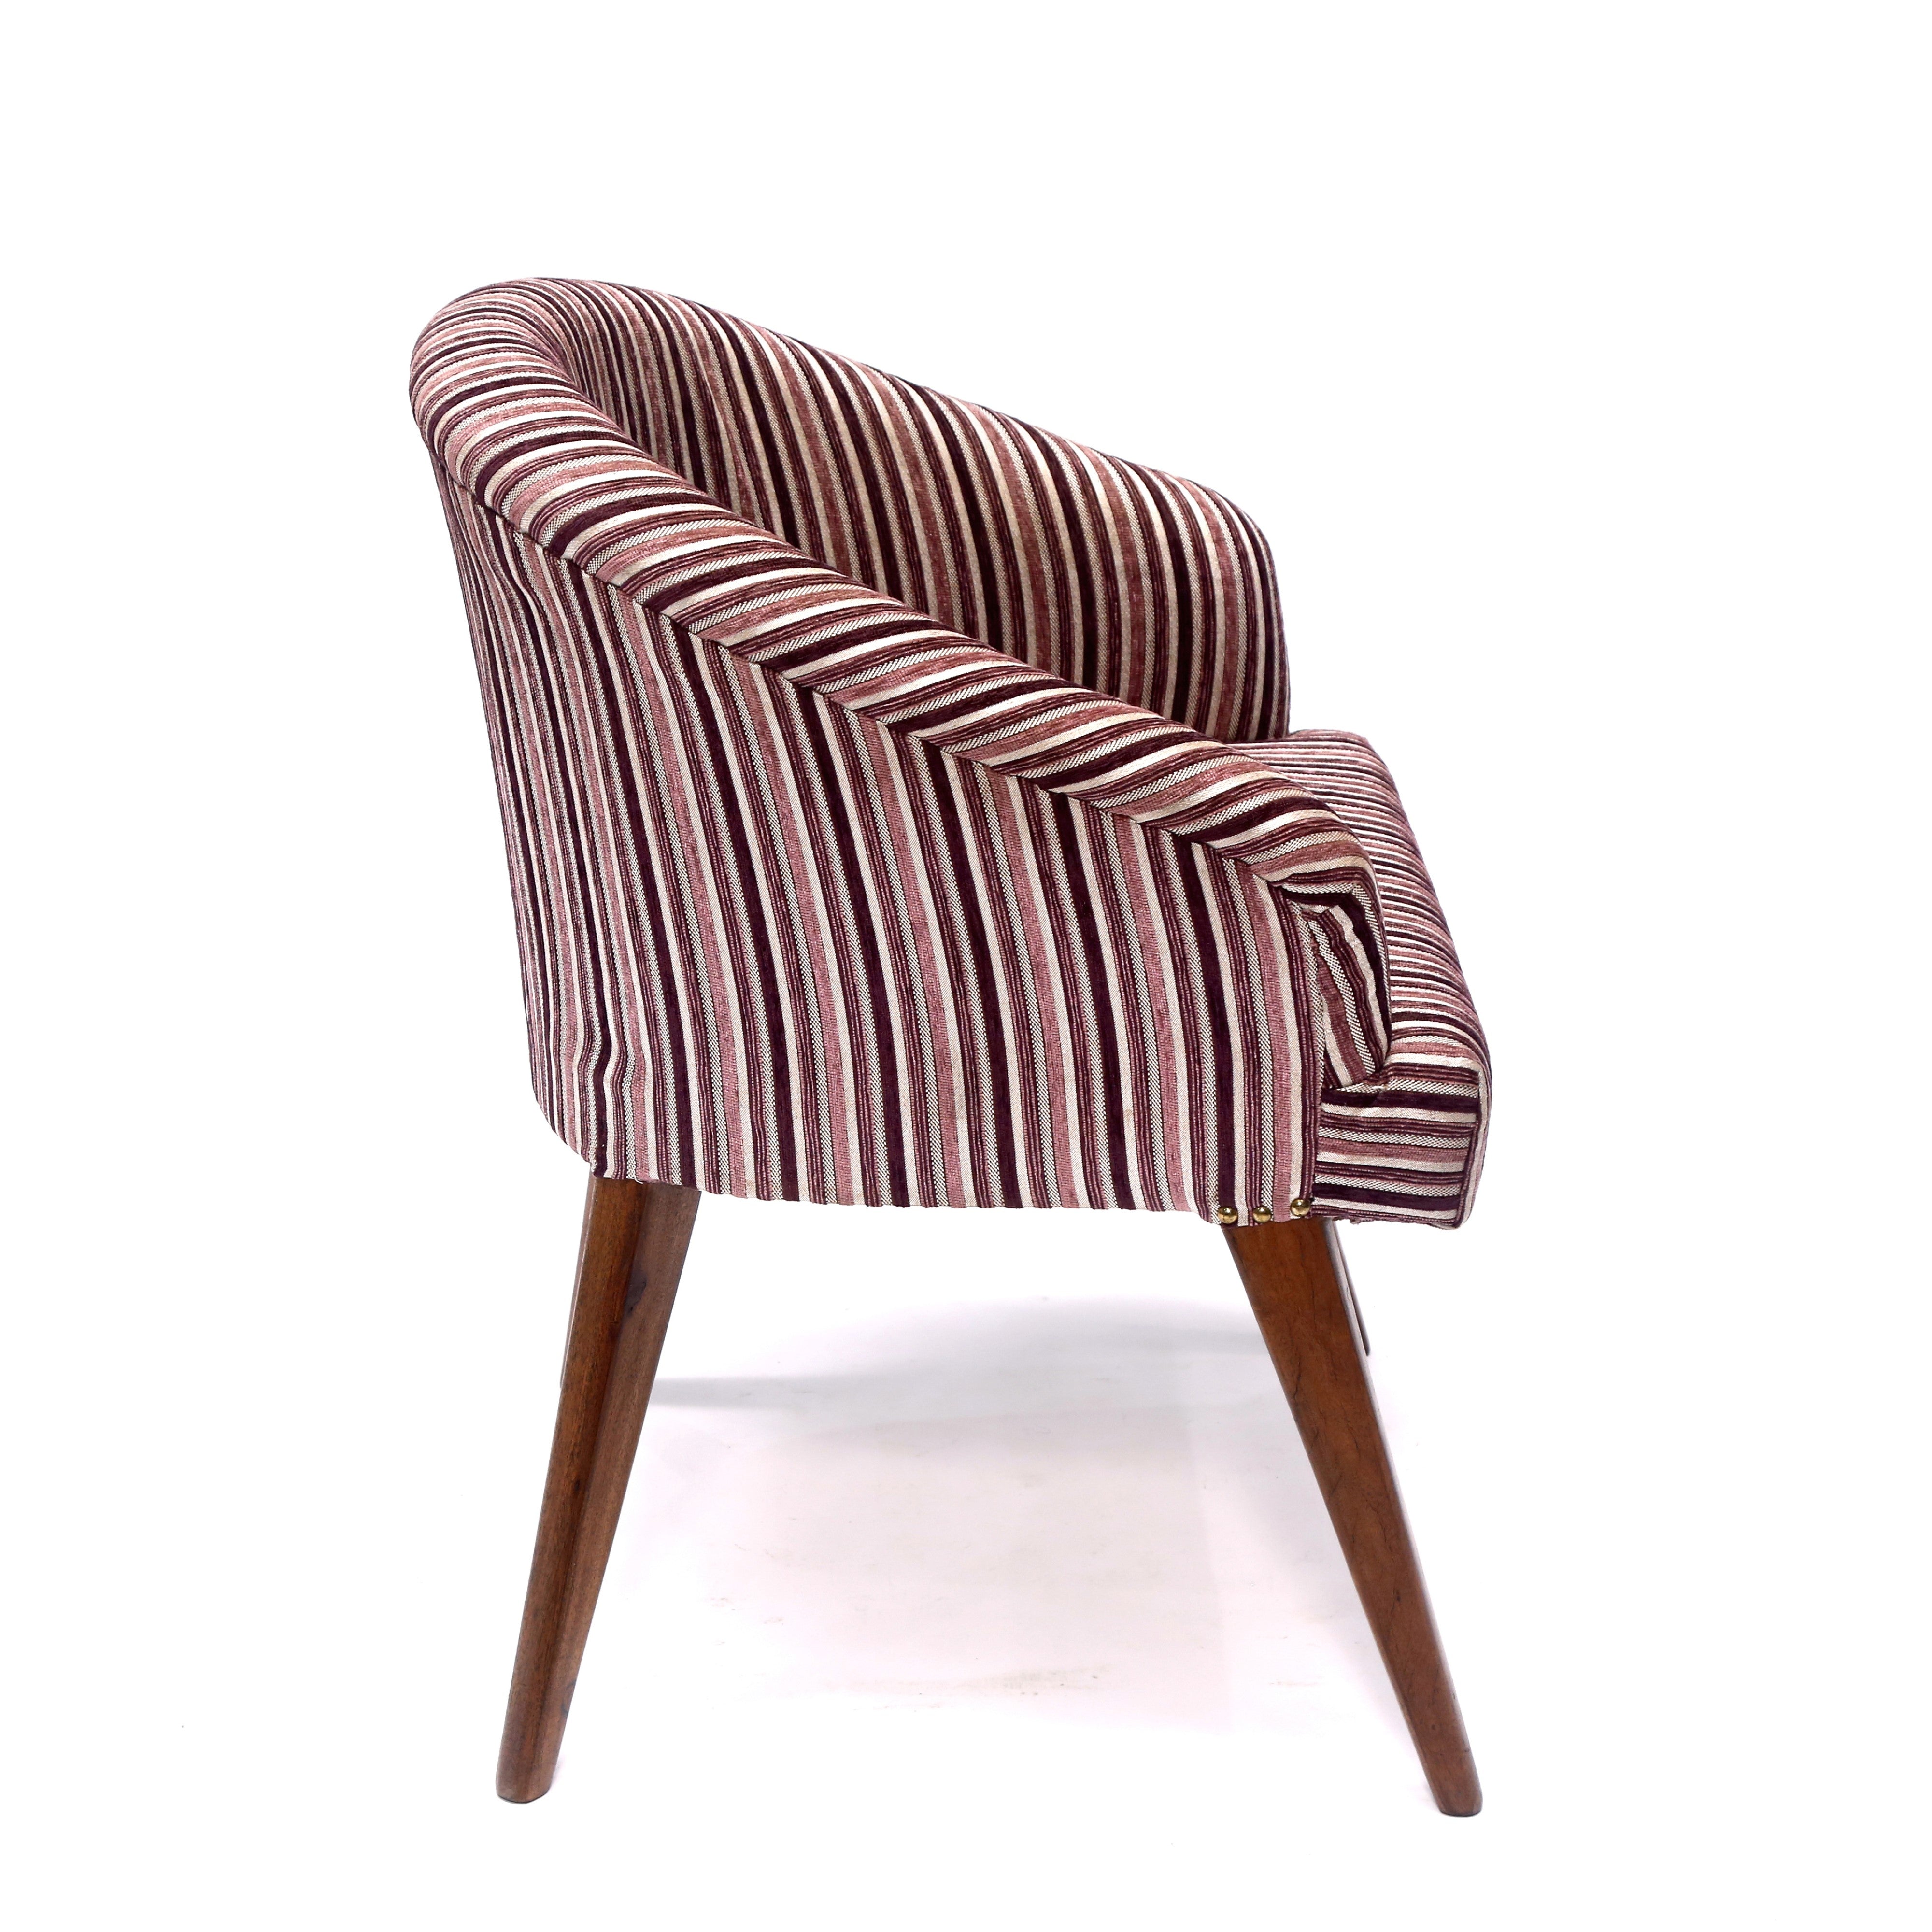 Retro Style Striped Arm Chair Arm Chair